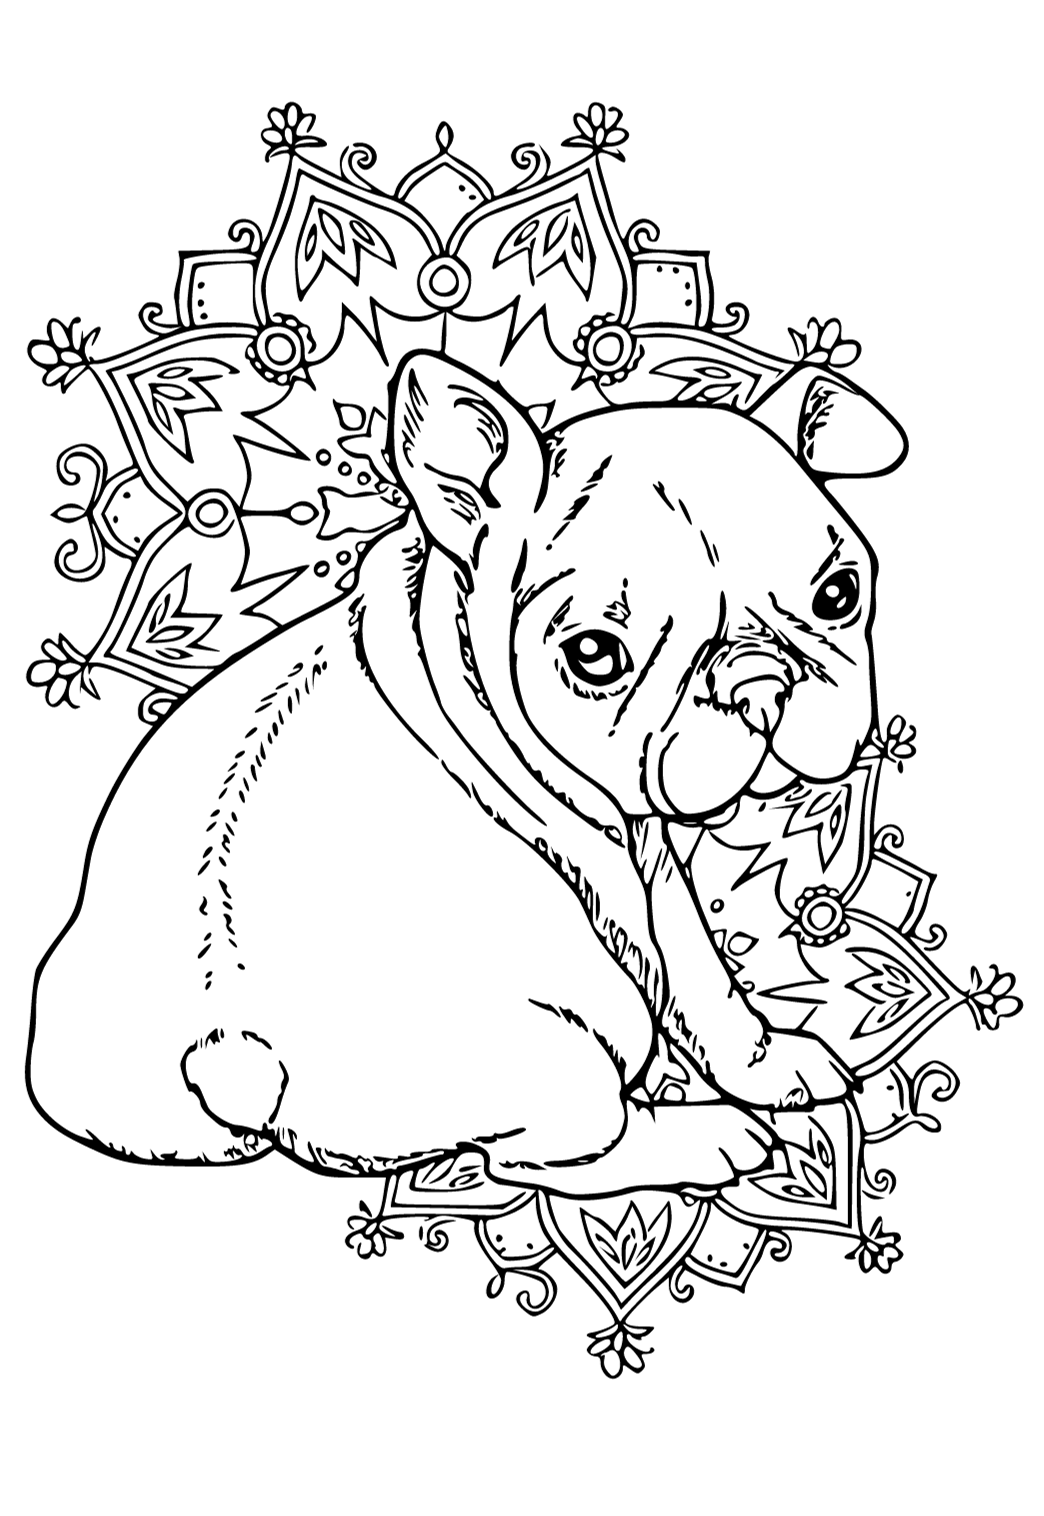 Desenho e Imagem A Dama e o Vagabundo Cachorrinhos para Colorir e Imprimir  Grátis para Adultos e Crianças 